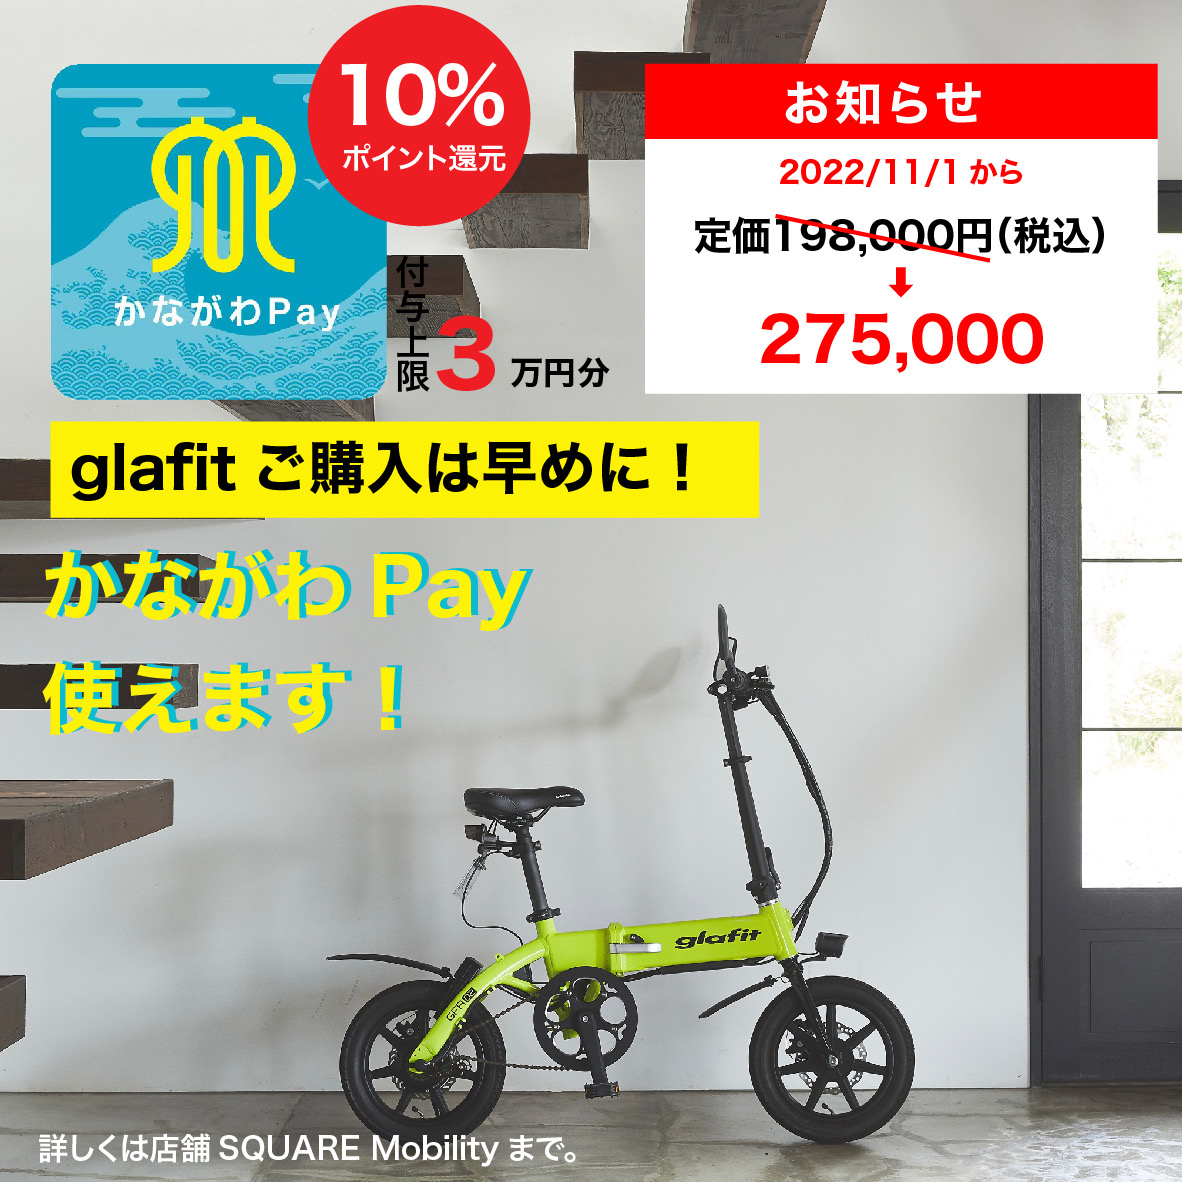 【お知らせ】2022年11月1日（火）より、glafit販売商品価格改定